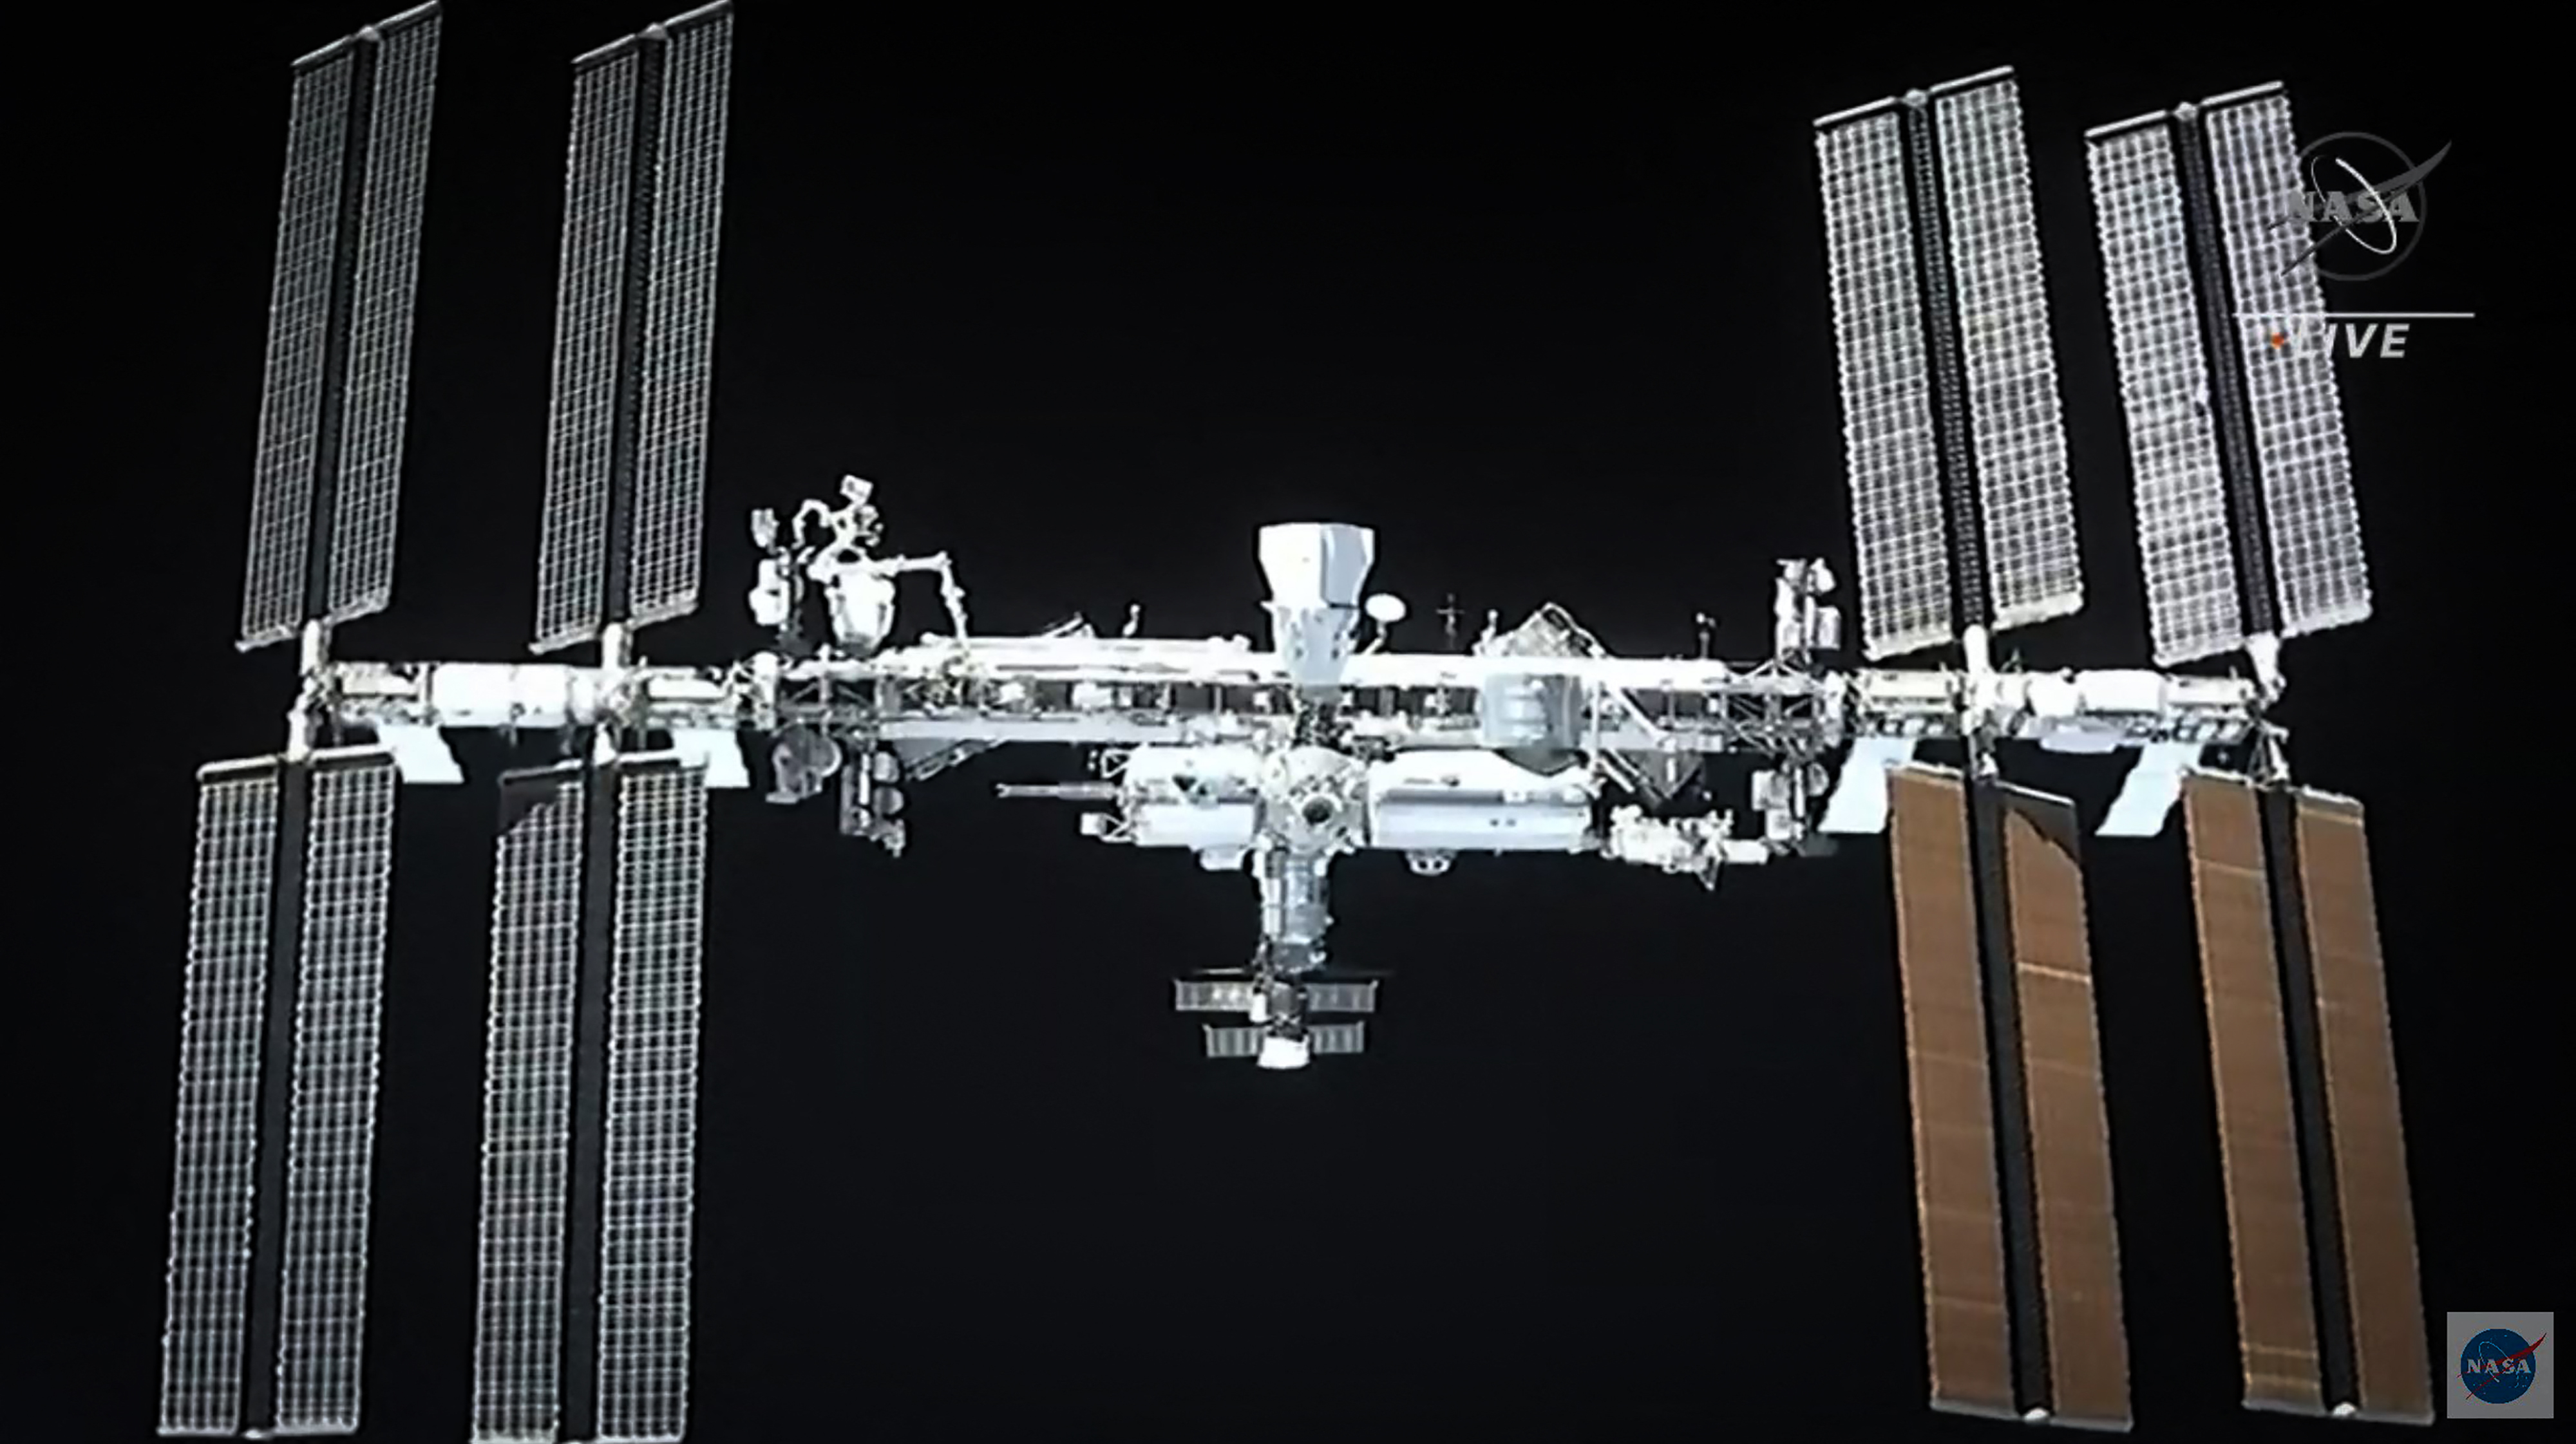 Szivárgott az űrkapszula, lefújták az űrsétát a Nemzetközi Űrállomáson